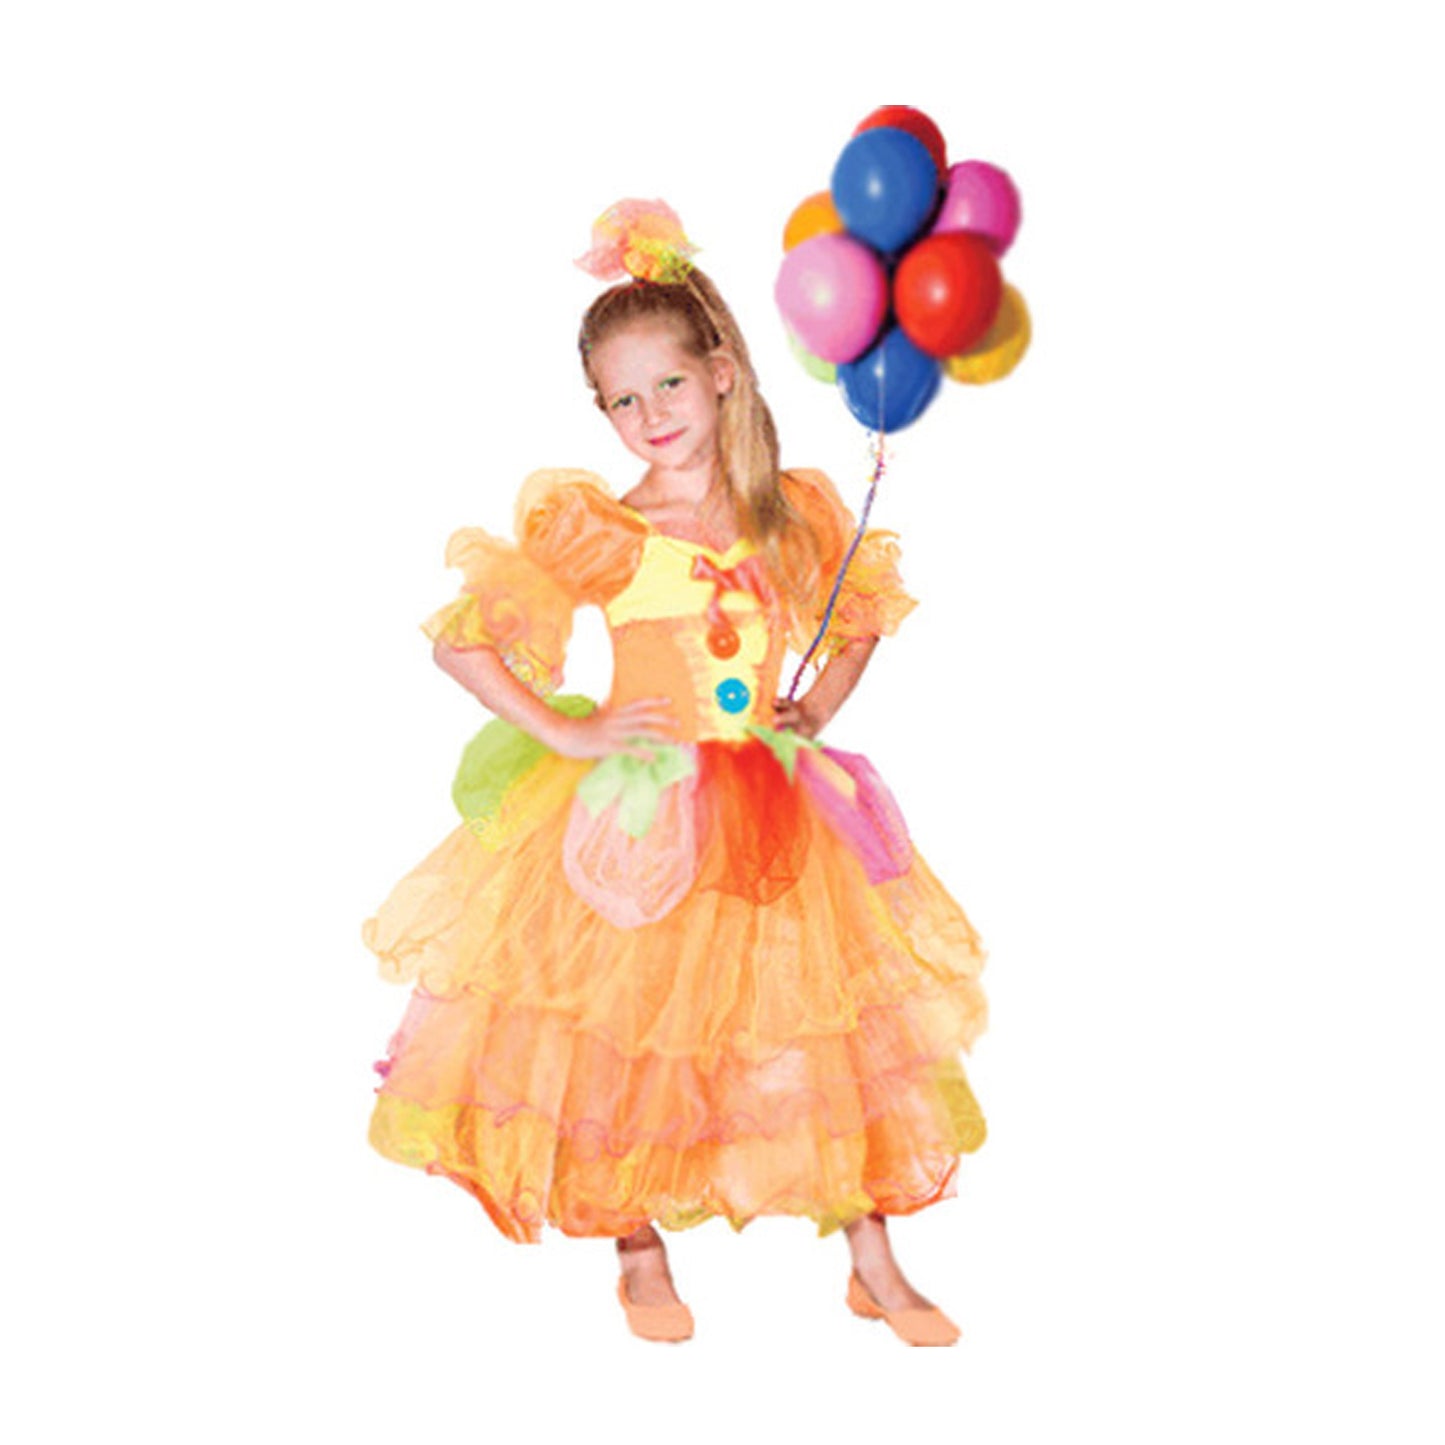 Candy Balloon Girl